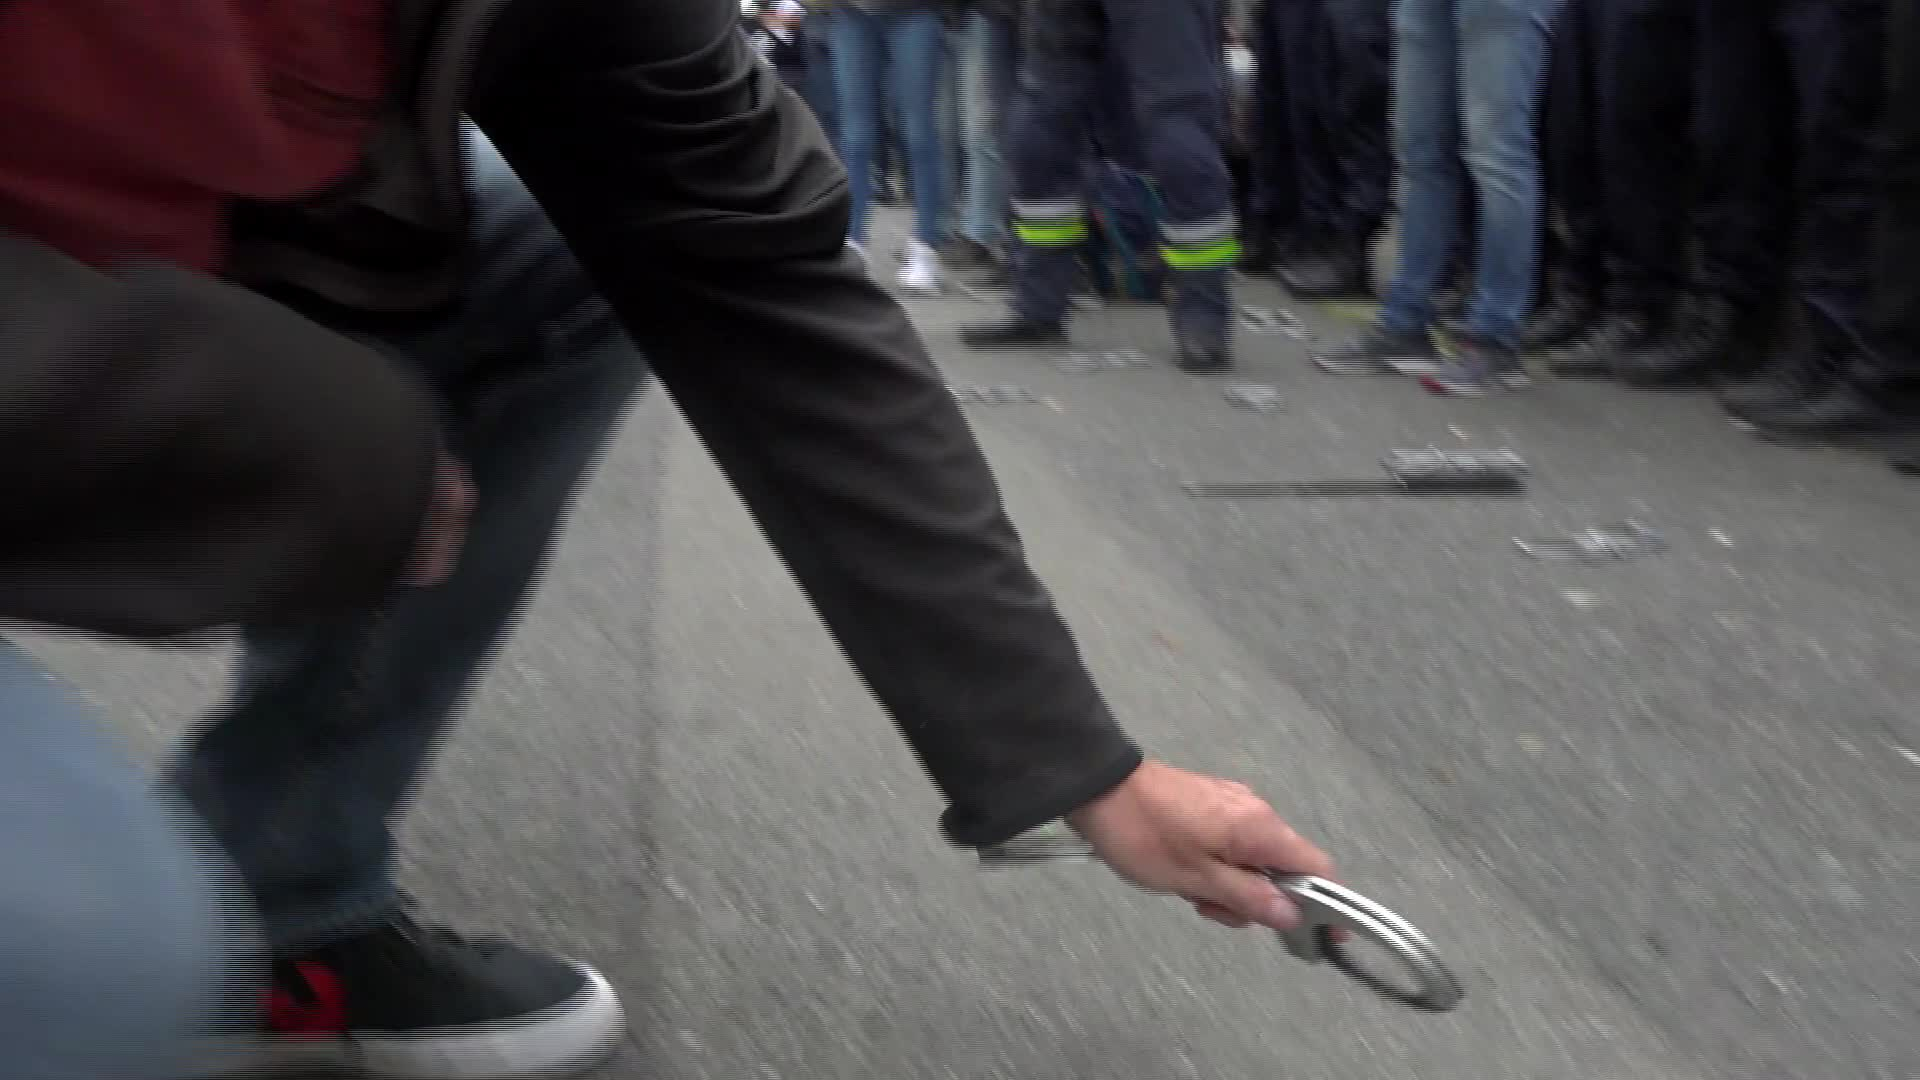 A Brest, manifestation de policiers contre leur "présomption de culpabilité" (Le Télégramme)